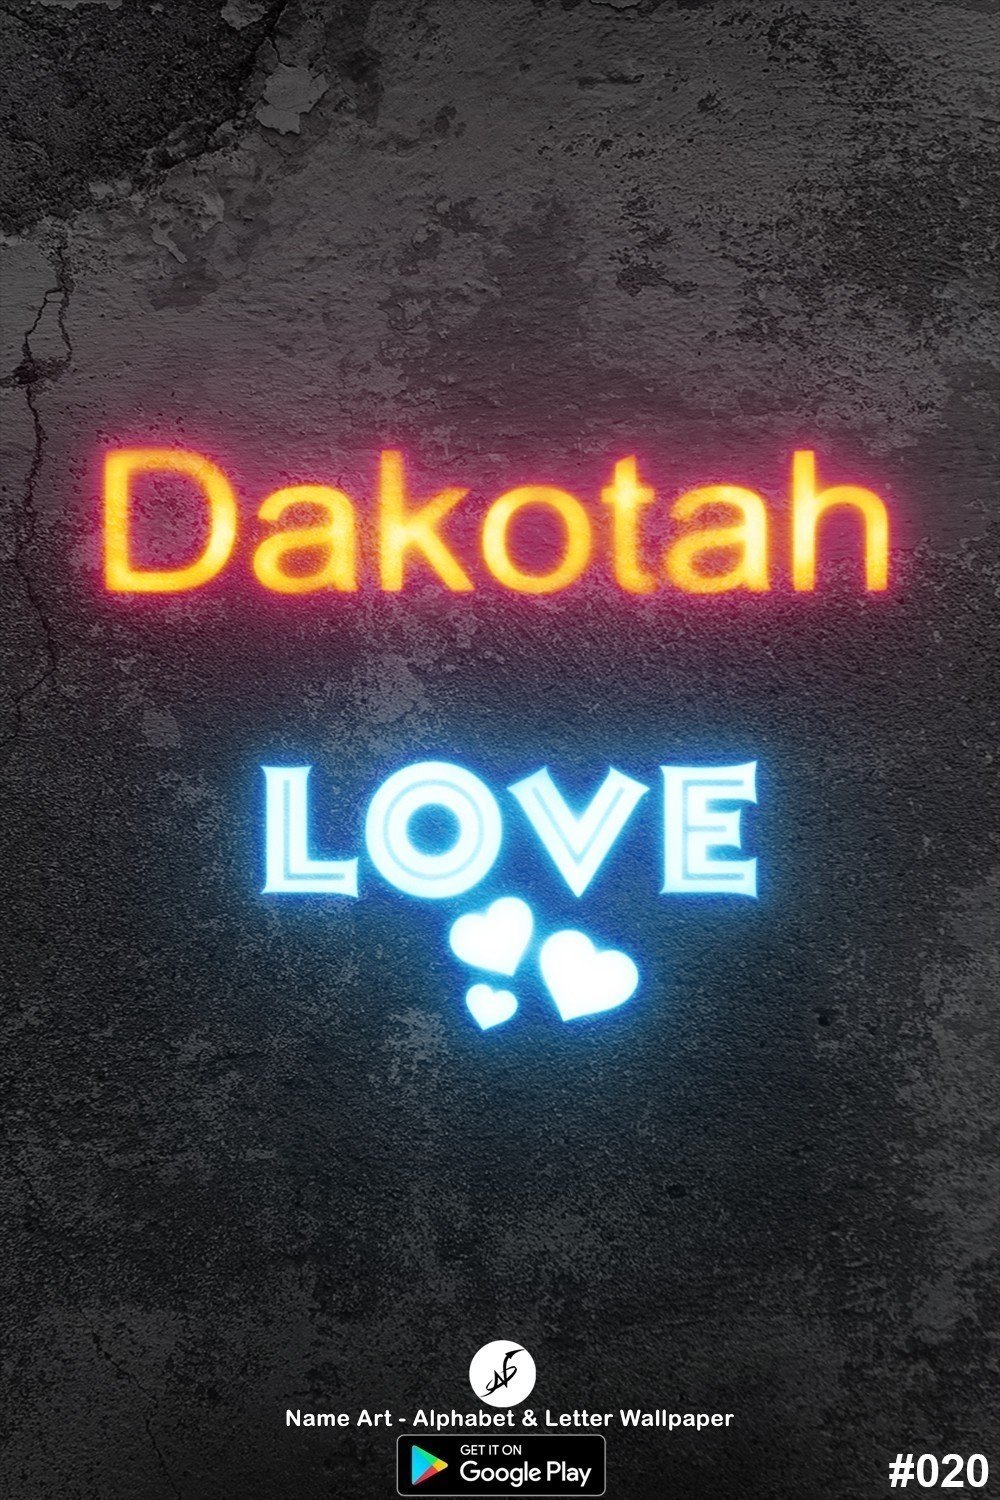 Dakotah | Whatsapp Status Dakotah | Happy Birthday Dakotah !! | New Whatsapp Status Dakotah Images |